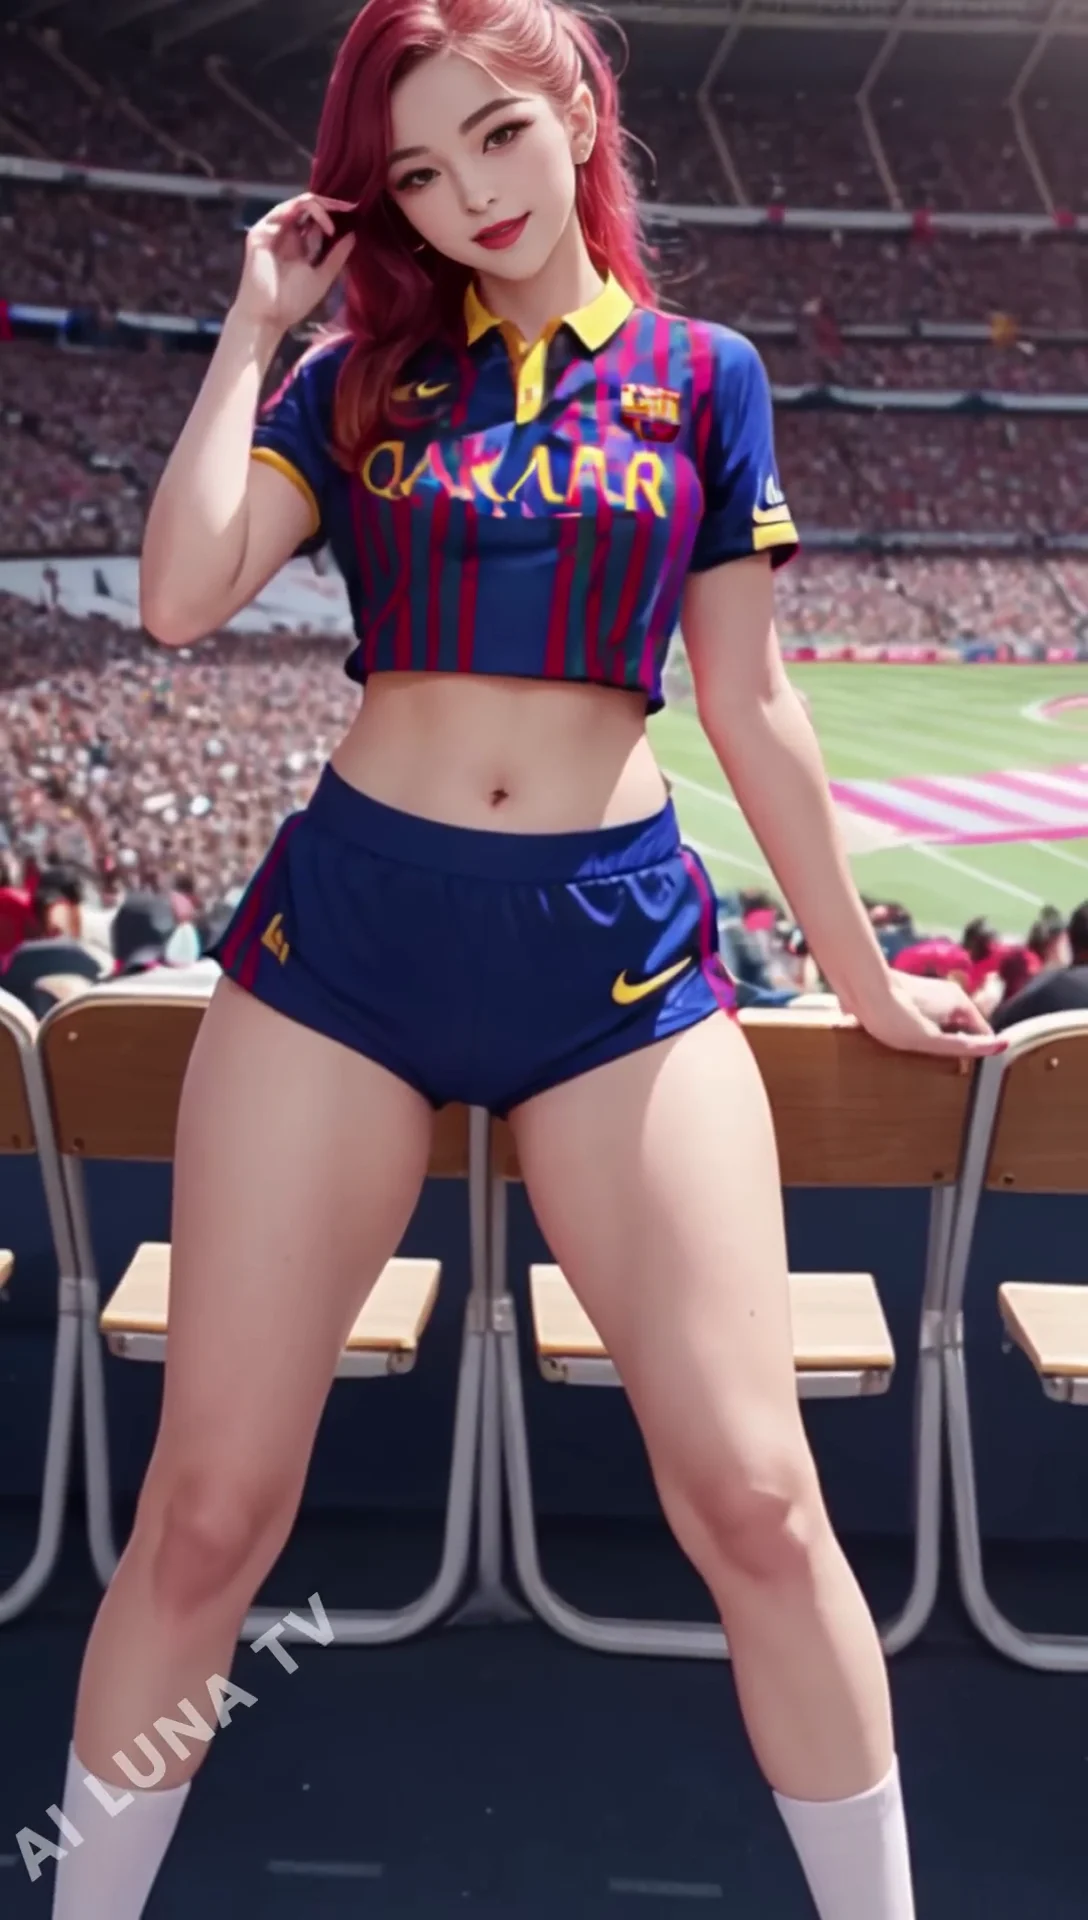 Ai Lookbook FC Barcelona Girl Images - 바르셀로나 걸스 팬 07